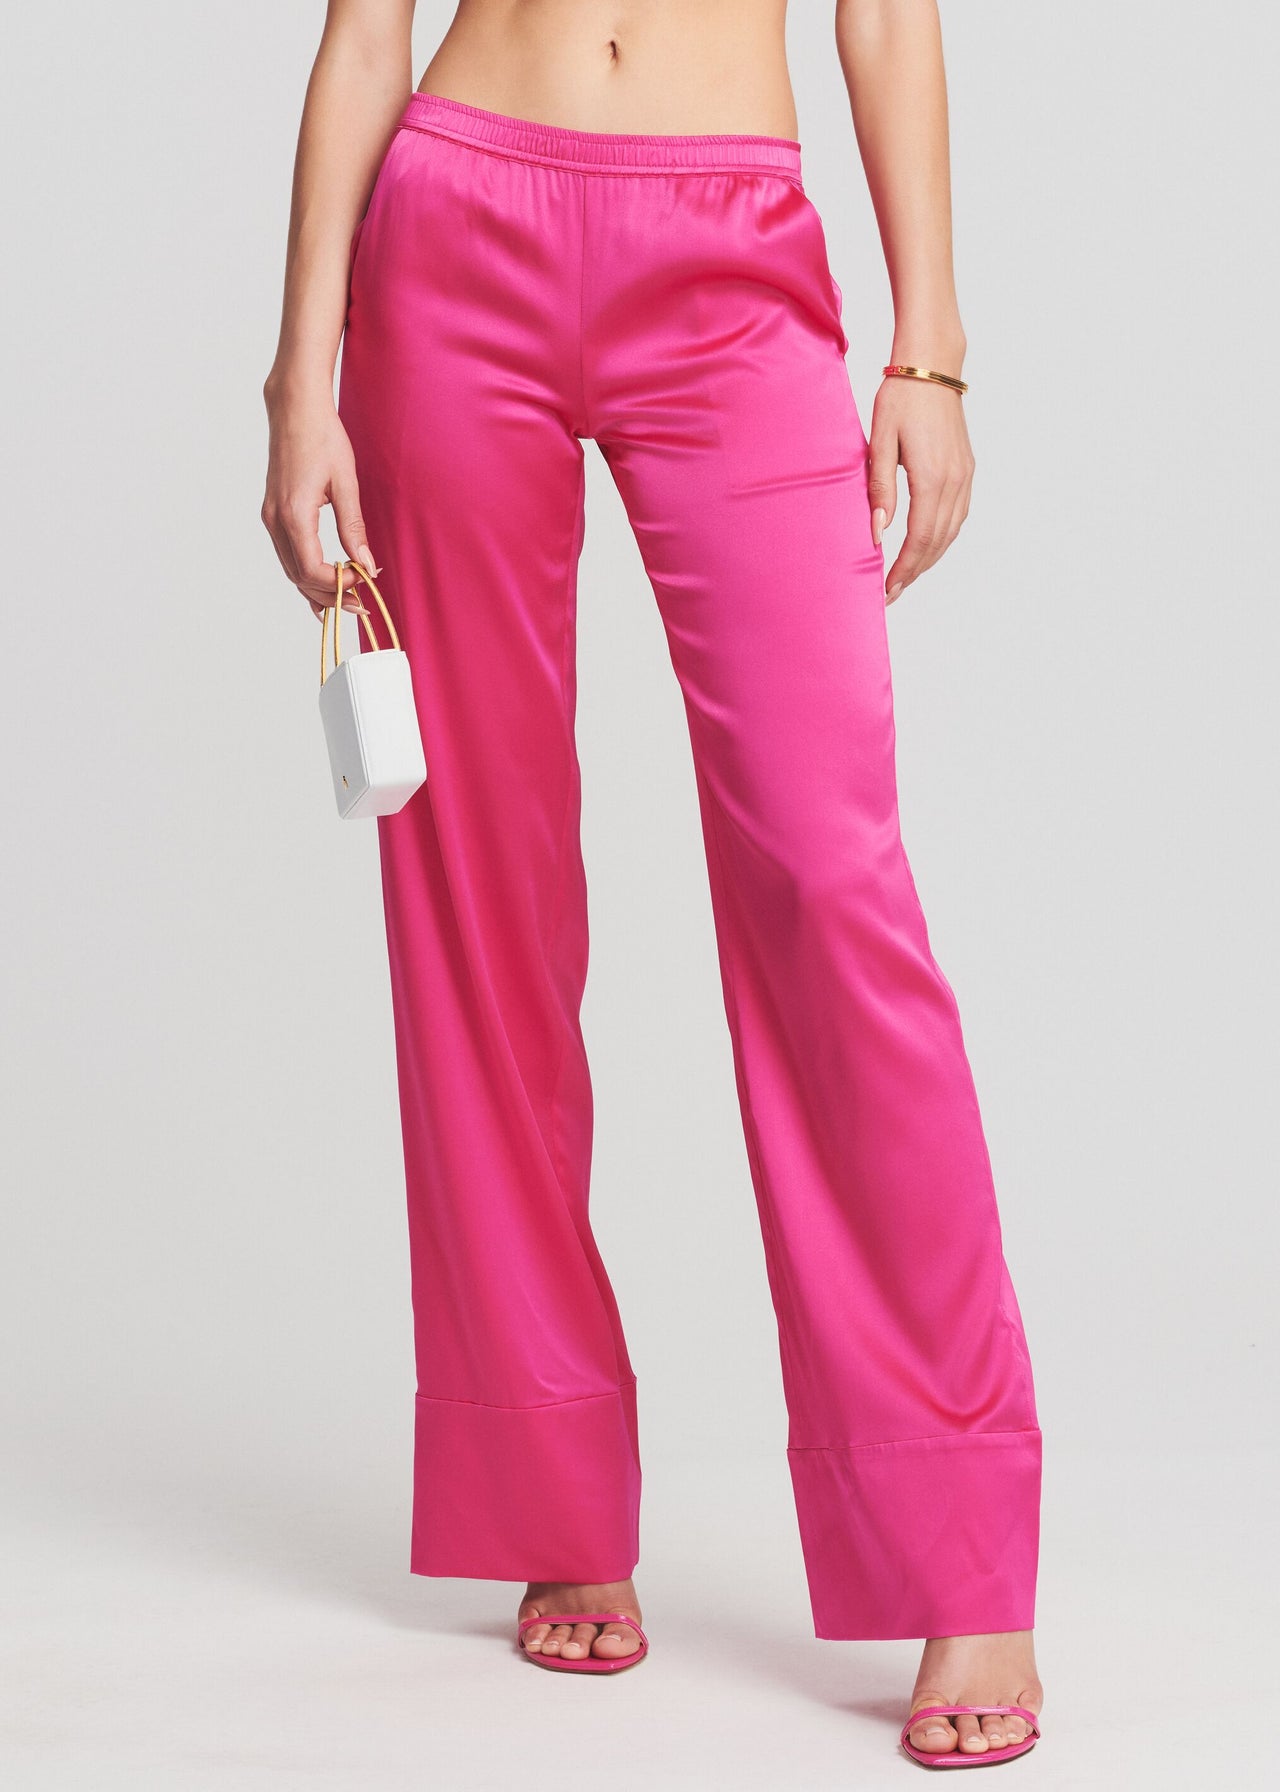 Pink Sequin pant set – Shop Luxe Life Boutique